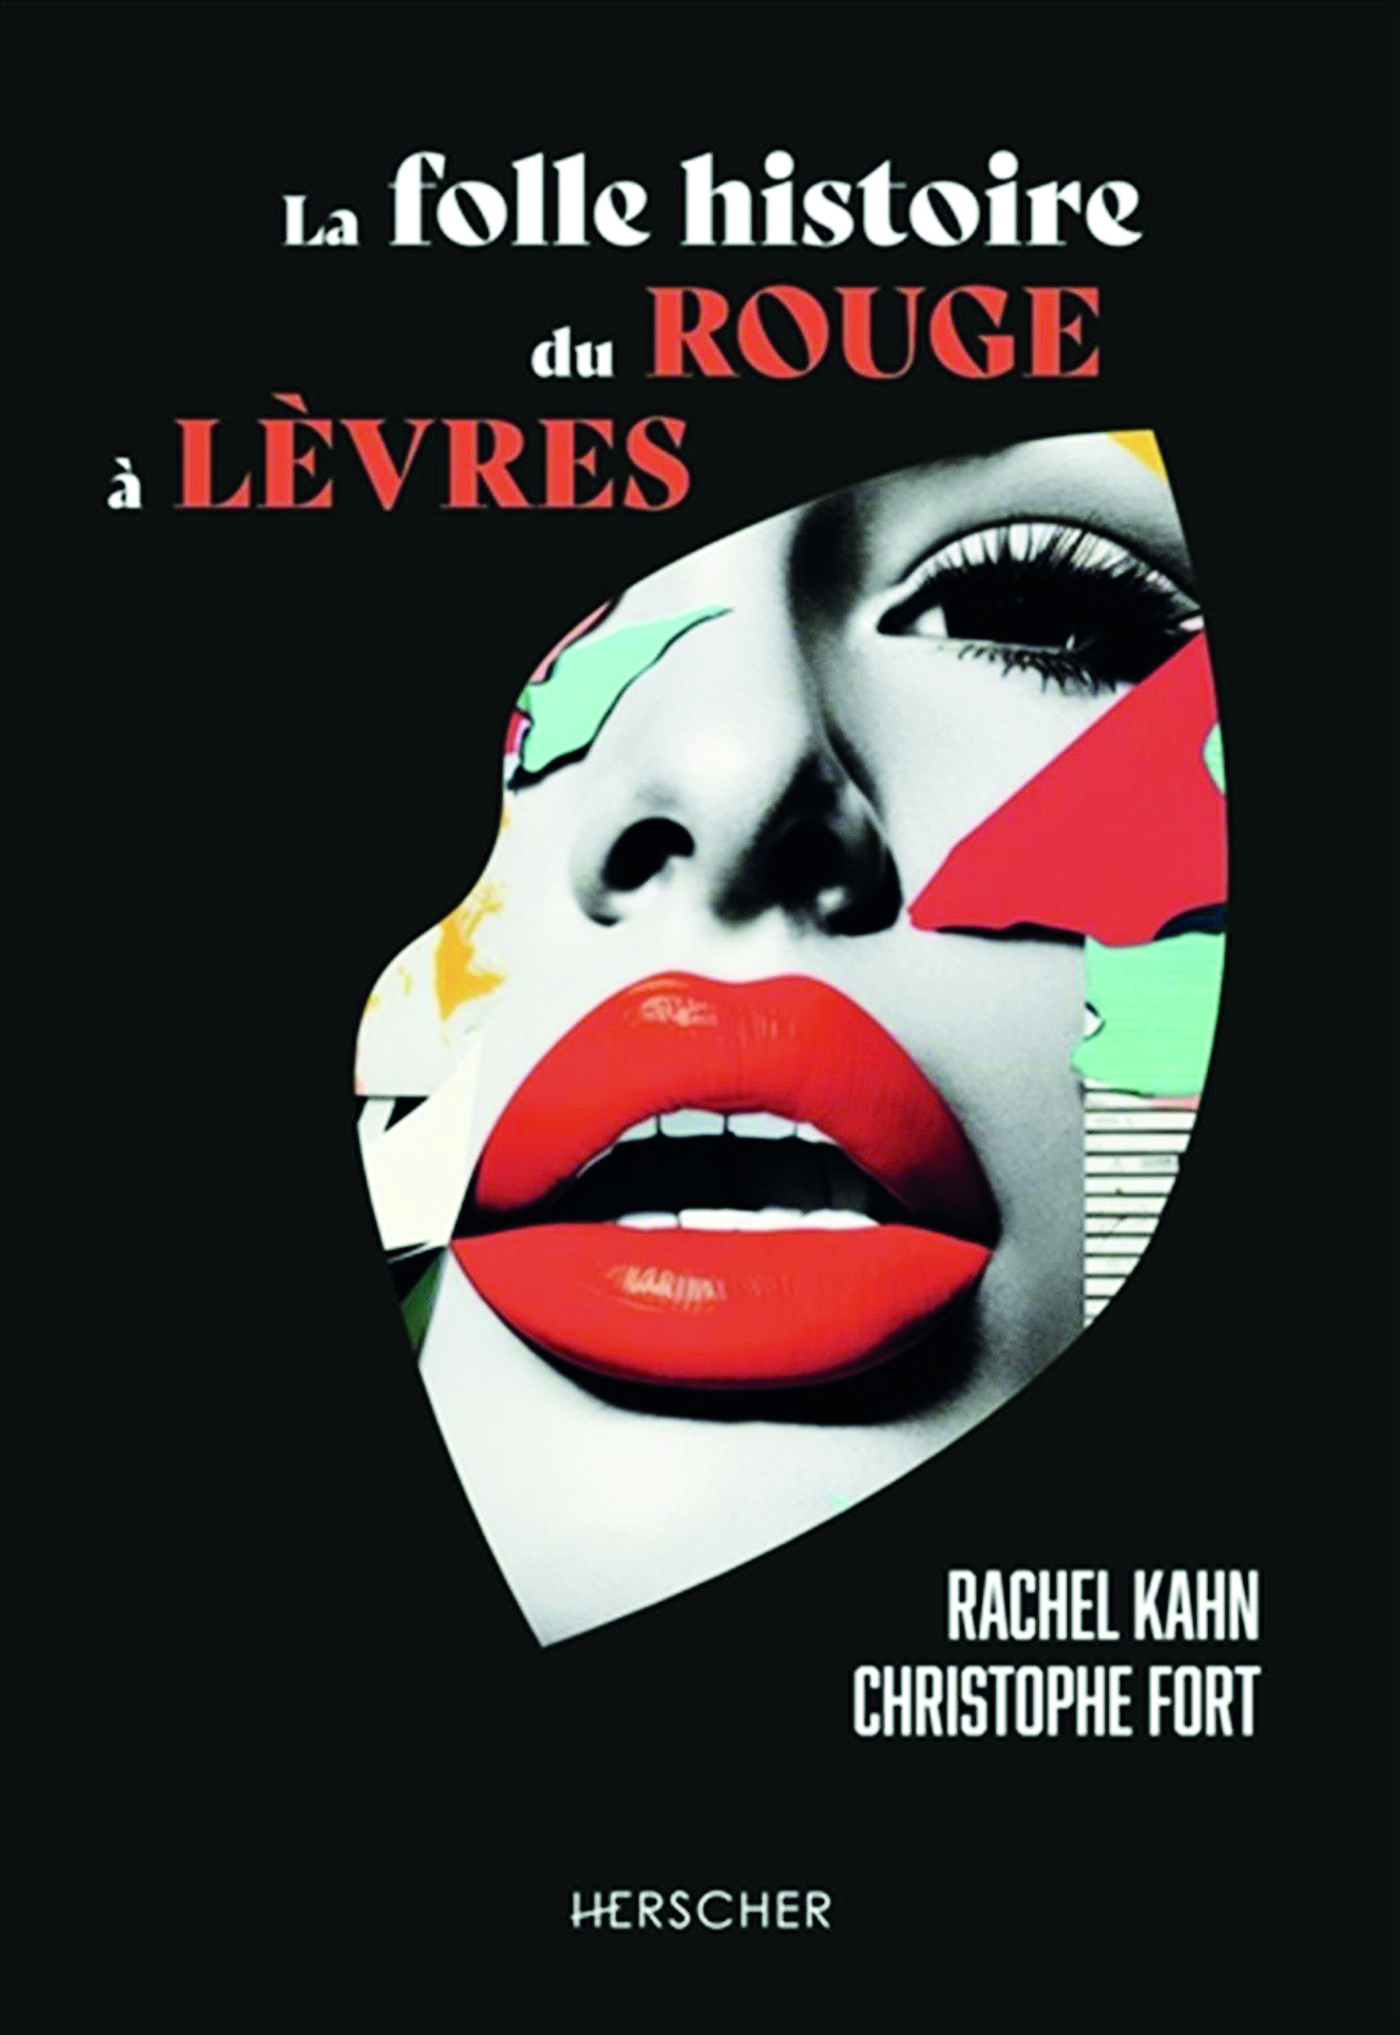 Edition : Le rouge à lèvres, son histoire et ses énigmes